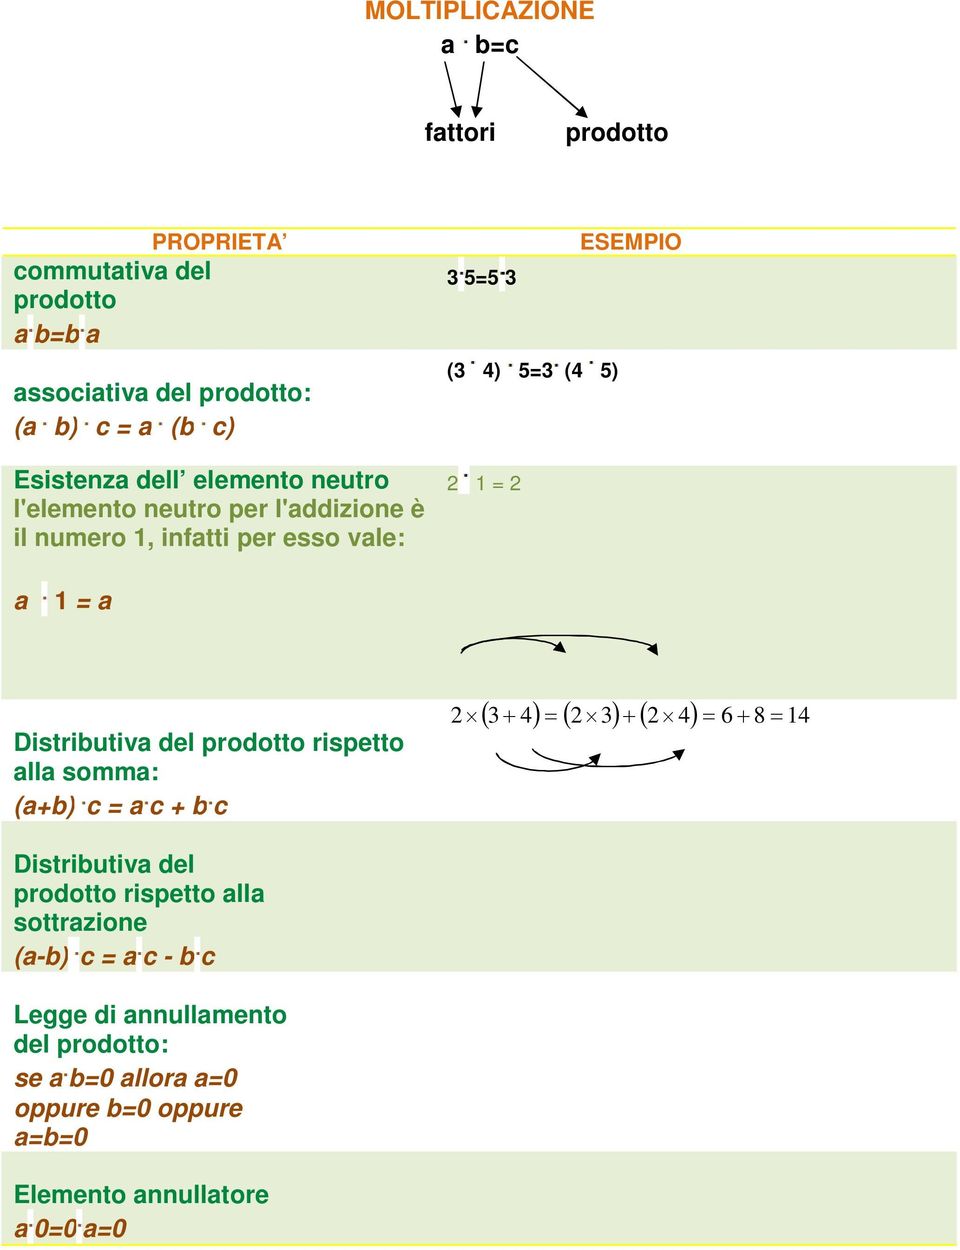 1 = a 1 = a Distributiva del prodotto rispetto alla somma: (a+b) c = a c + b c 3 4 3 4 6 8 14 Distributiva del prodotto rispetto alla